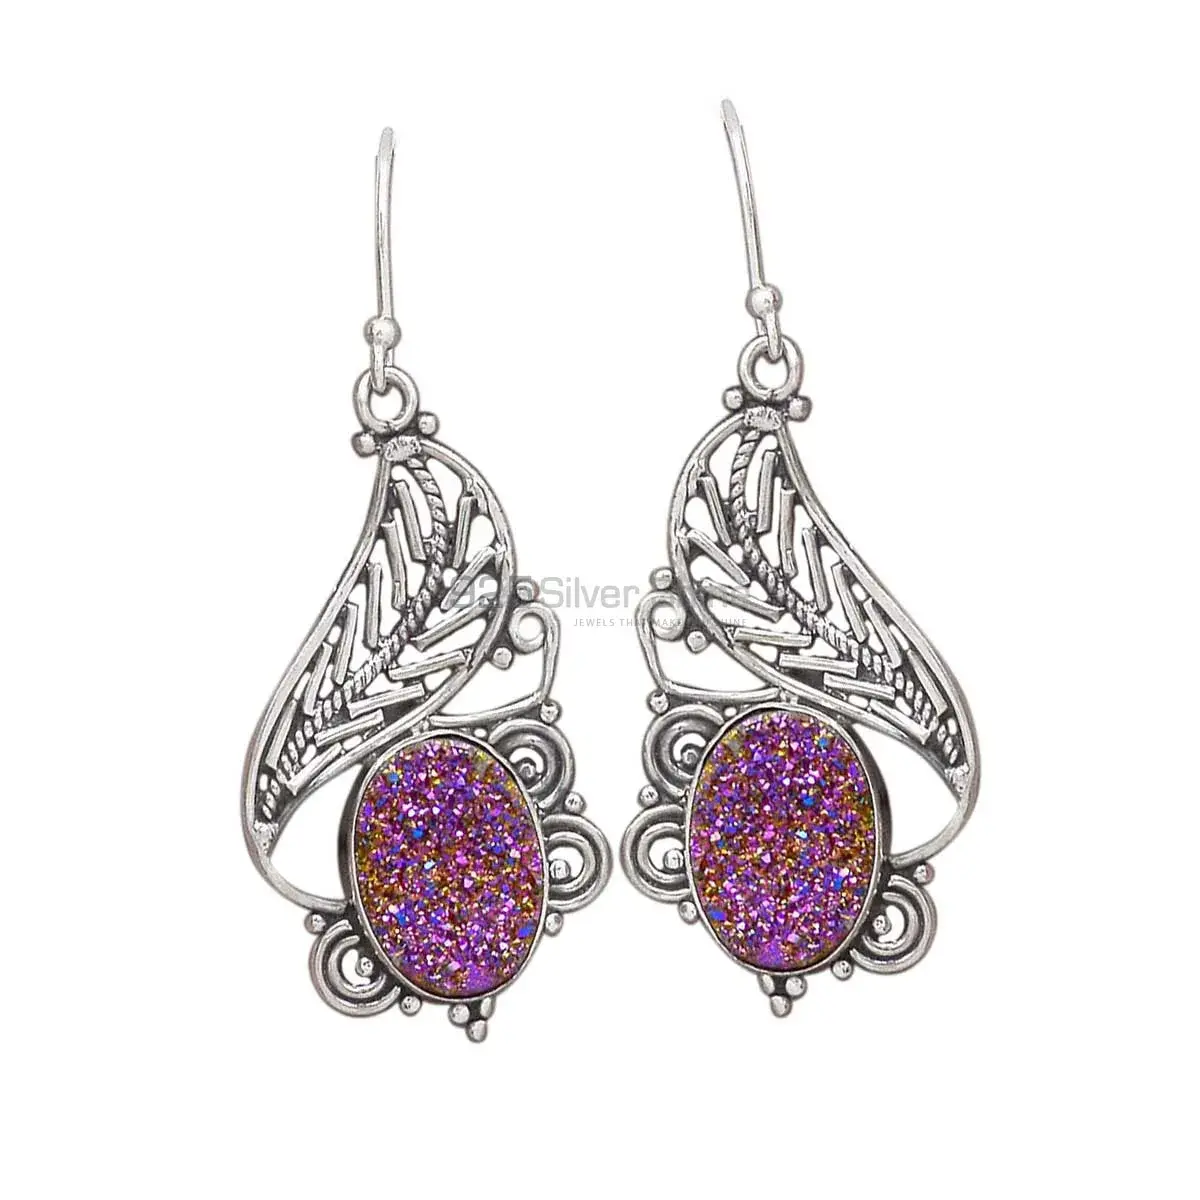 Beautiful 925 Sterling Silver Handmade Earrings Suppliers In Druzy Gemstone Jewelry 925SE2958